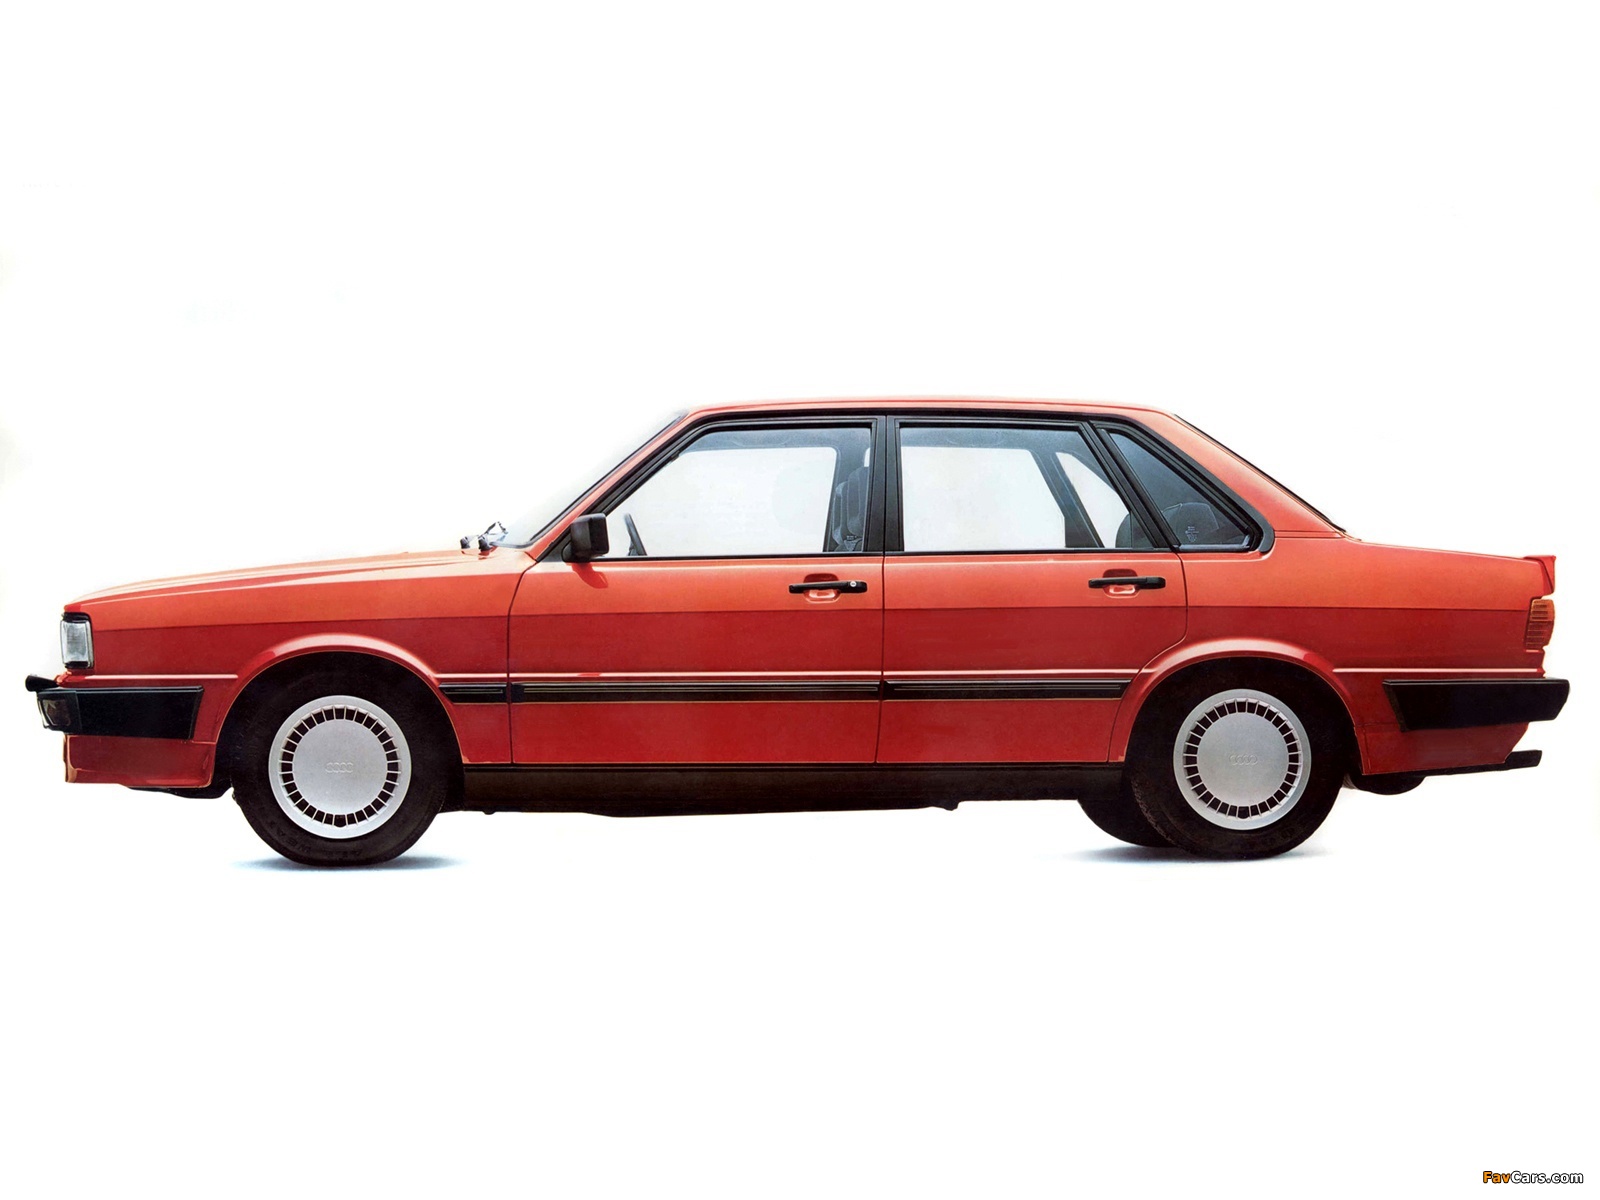 Audi 80 quattro B2 (1982–1984) photos (1600 x 1200)